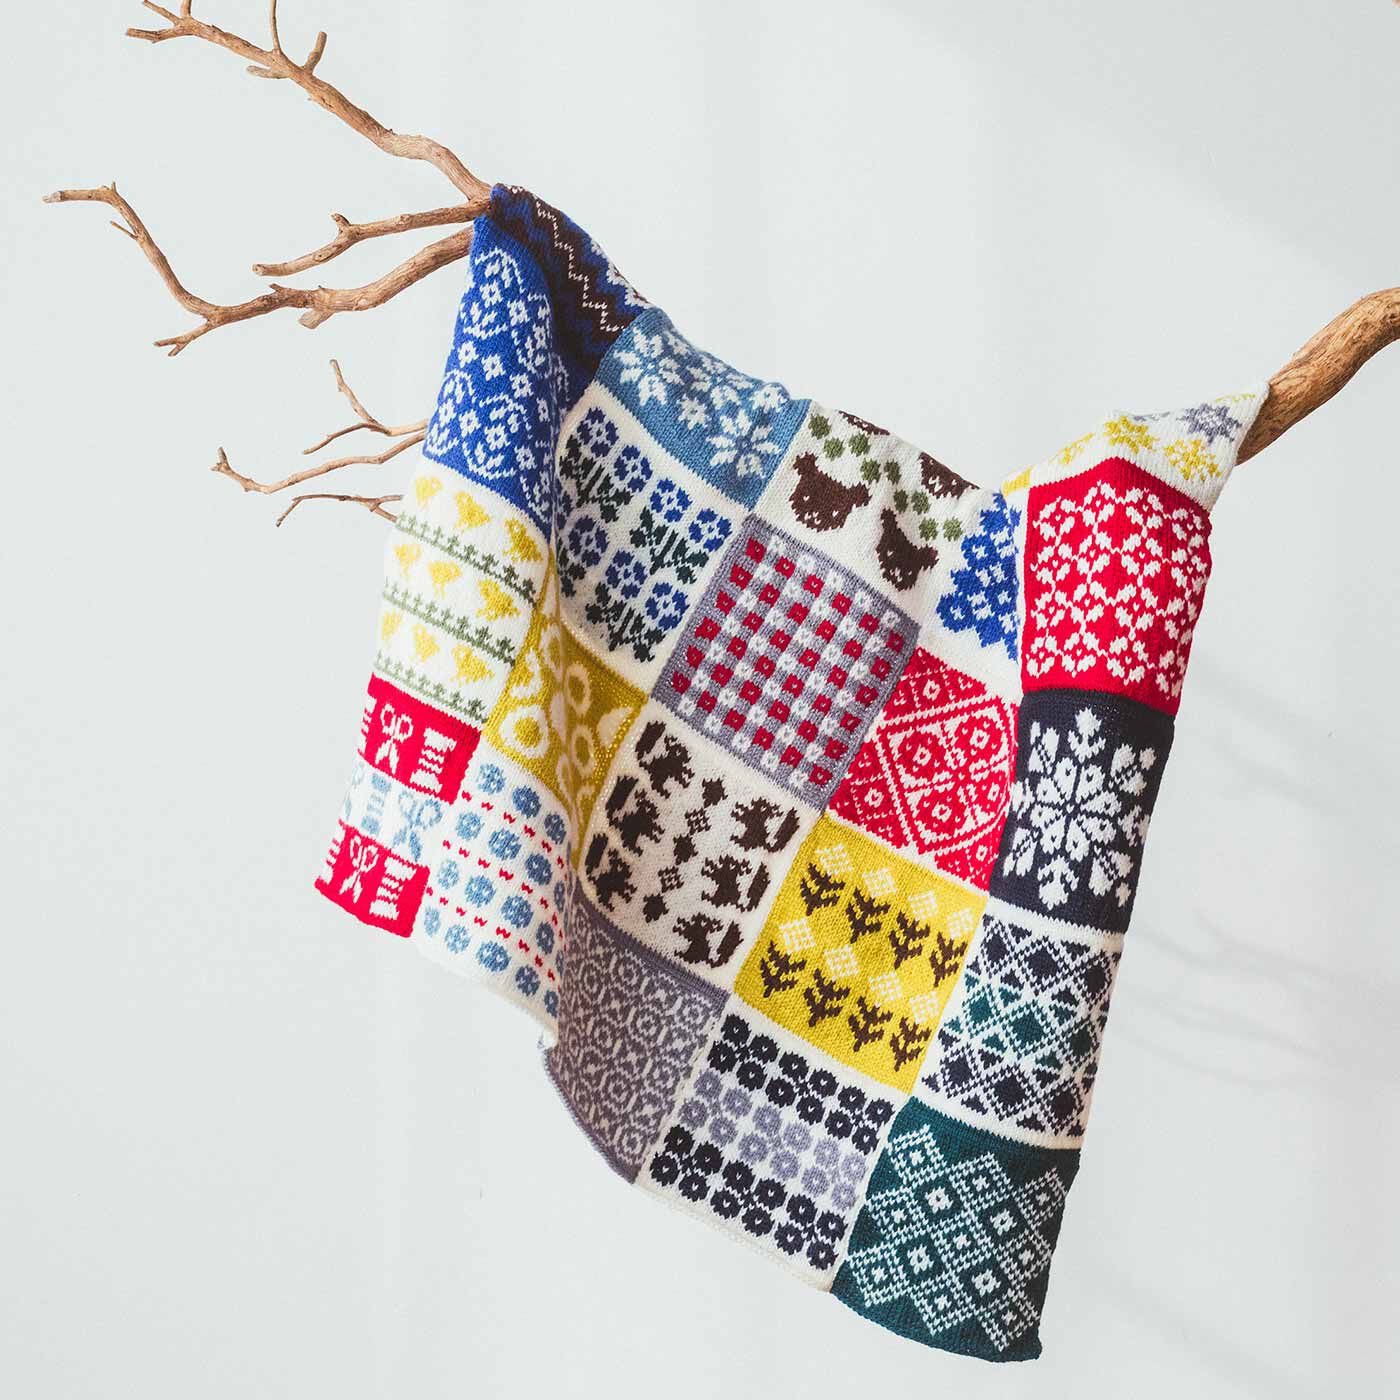 クチュリエ|自然からの贈りもの めくるめく北欧模様を楽しむ棒針編みサンプラーの会